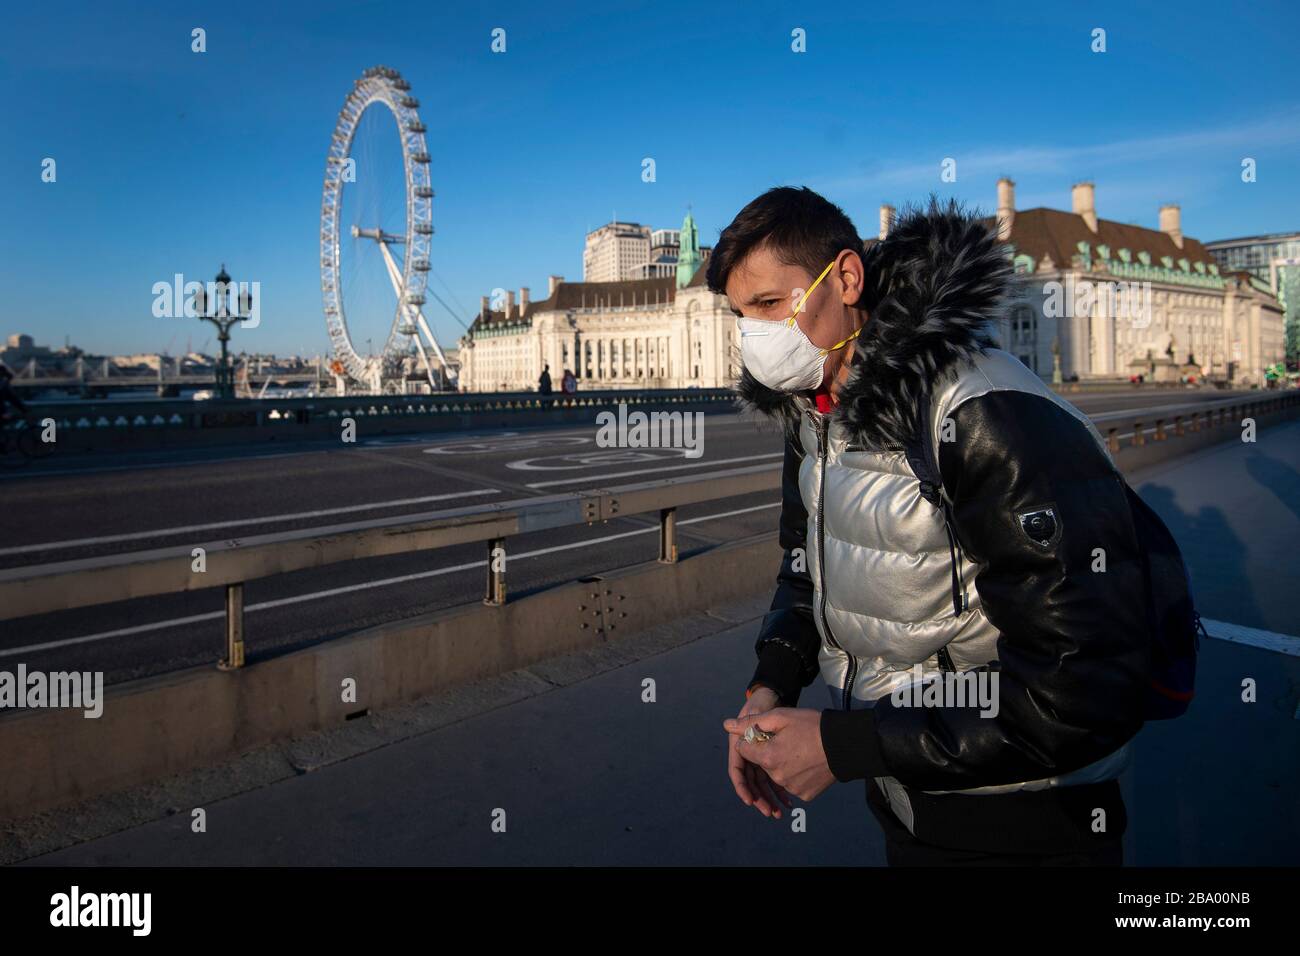 Un hombre con máscara protectora camina por el puente de Westminster, Londres, en la hora punta de la tarde, normalmente ocupada, después de que el primer ministro Boris Johnson tomara la decisión de poner al Reino Unido en orden para ayudar a frenar la propagación del coronavirus. Foto de stock